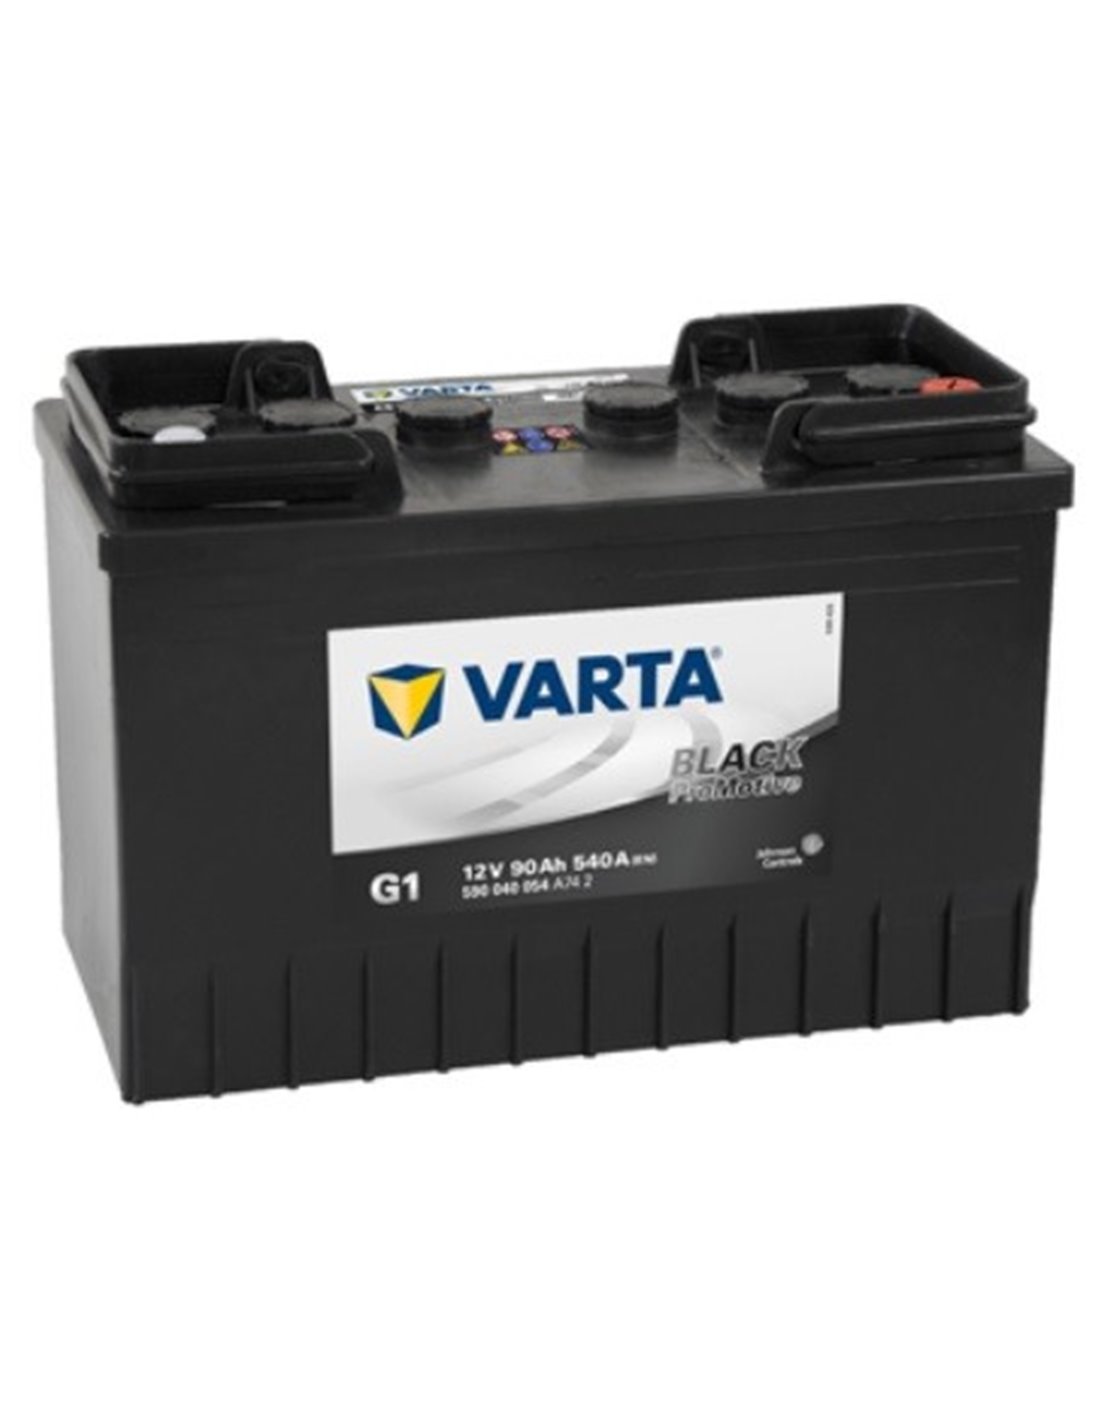 VARTA Promotive Black 12V 90Ah 540A - Borna Normala (dreapta +)